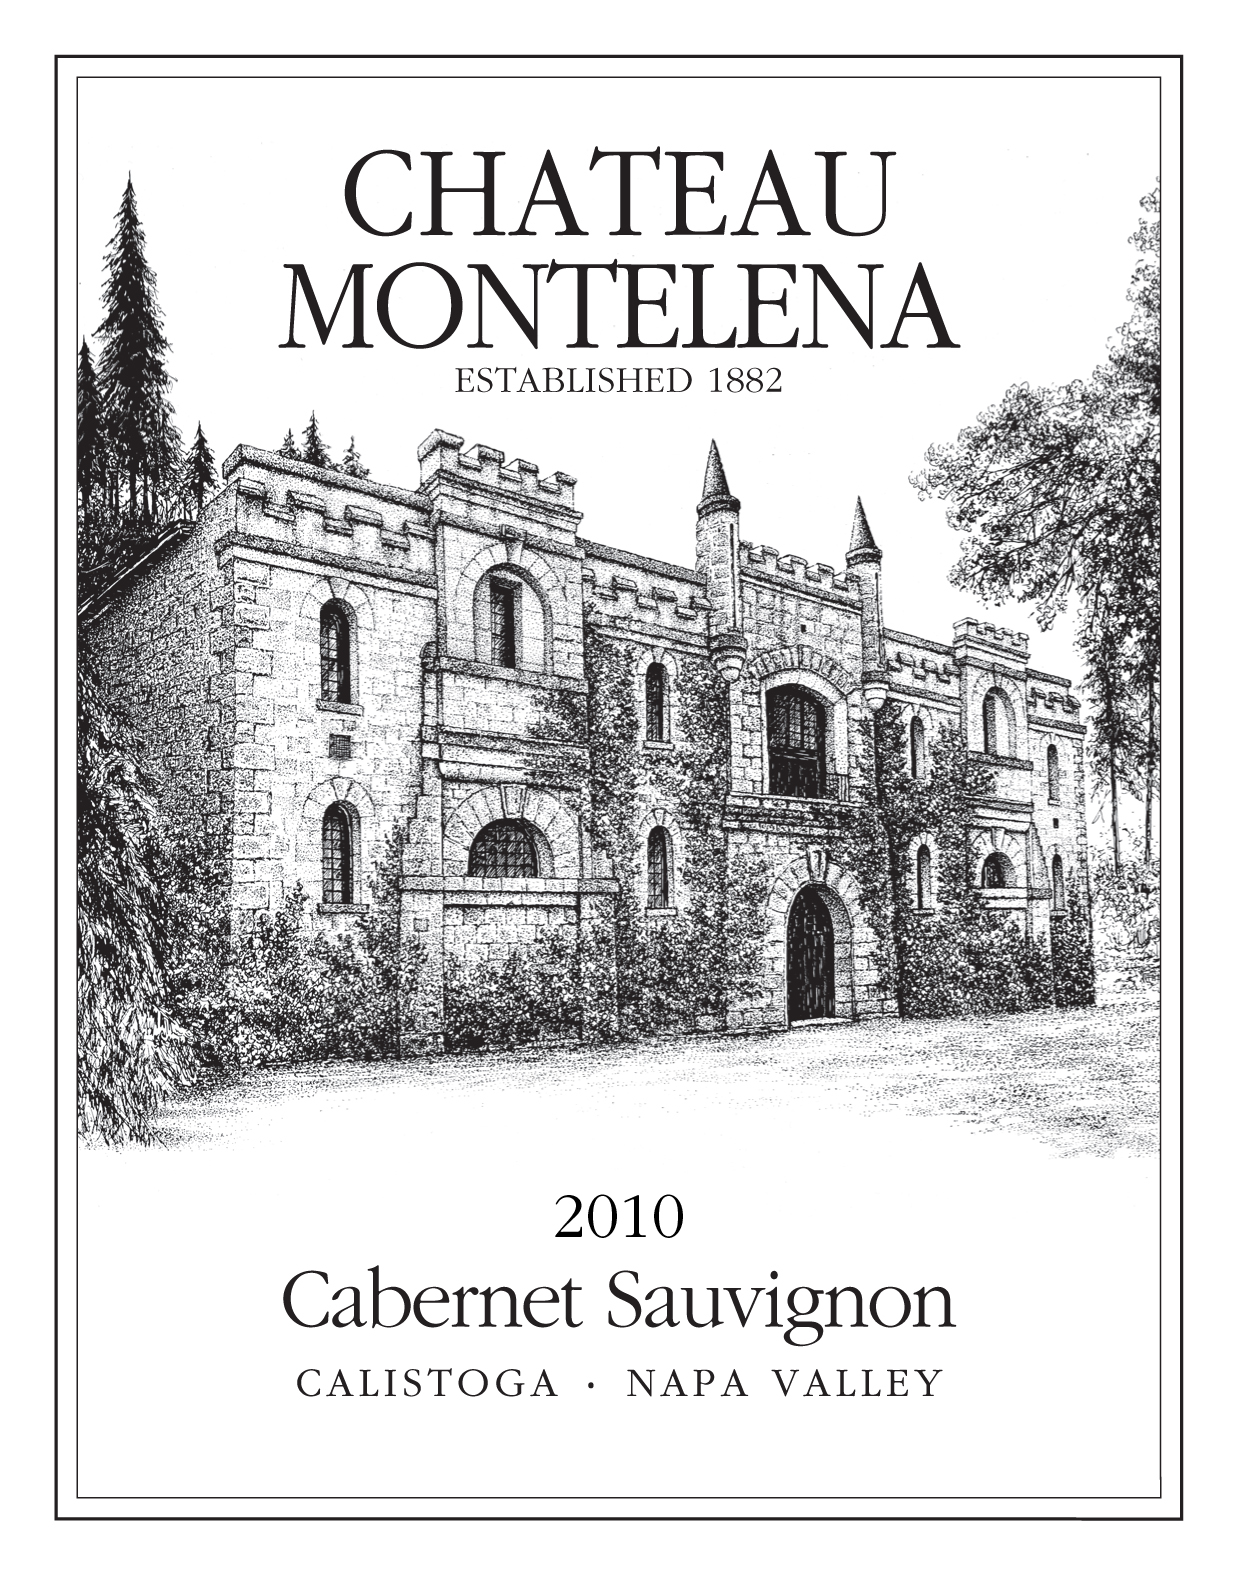 2010 Chateau Montelena Cabernet Sauvignon Estate Napa image